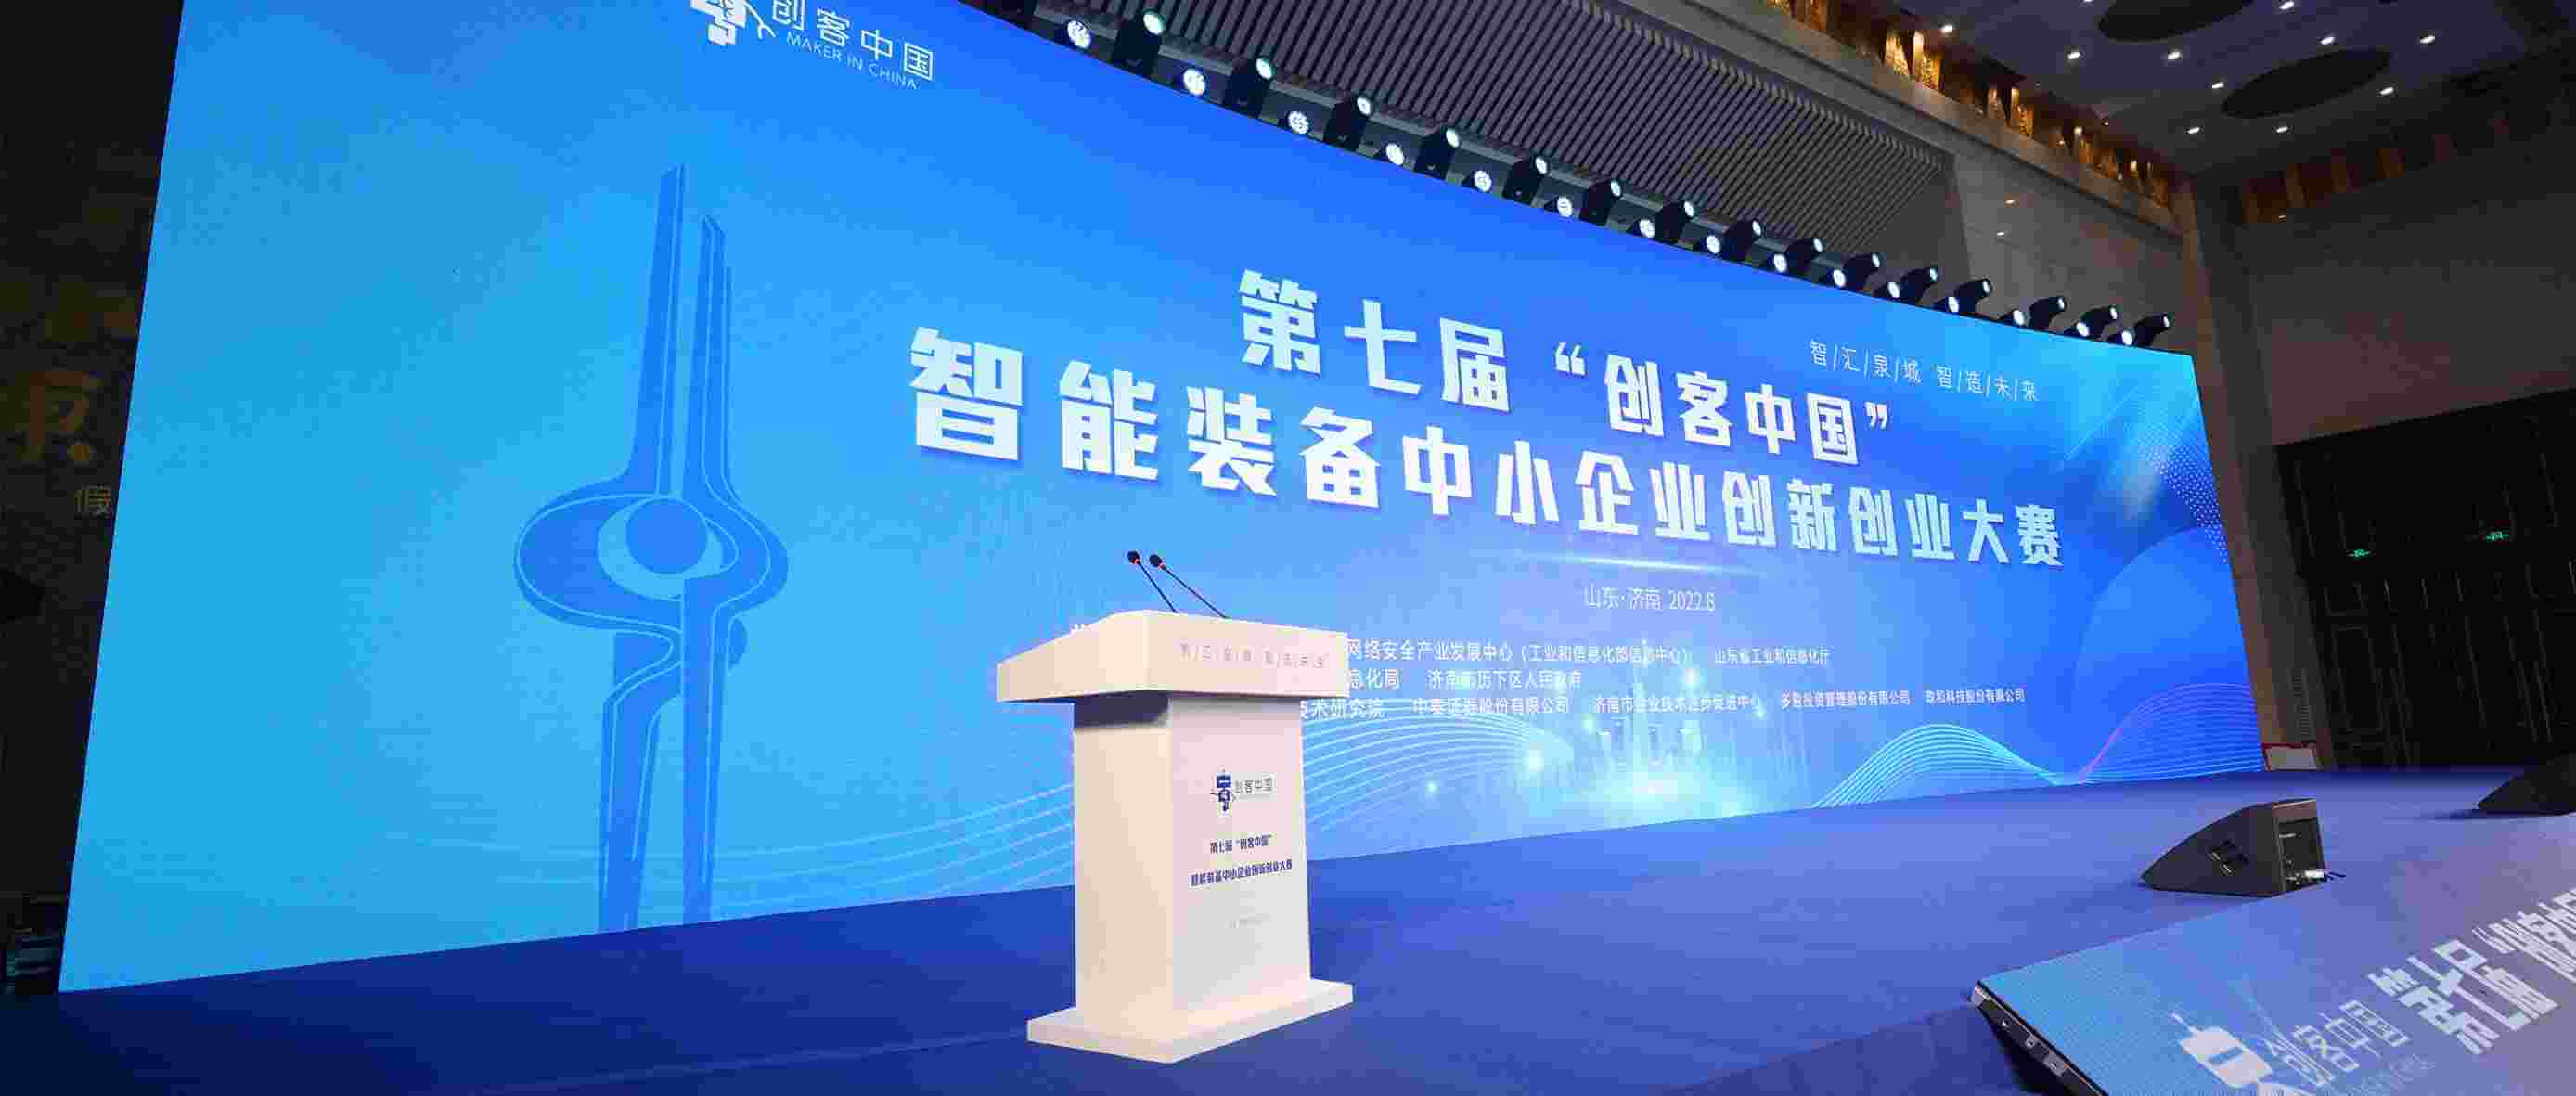 维感科技荣获“创客中国”智能装备中小企业创新创业大赛企业组优胜奖